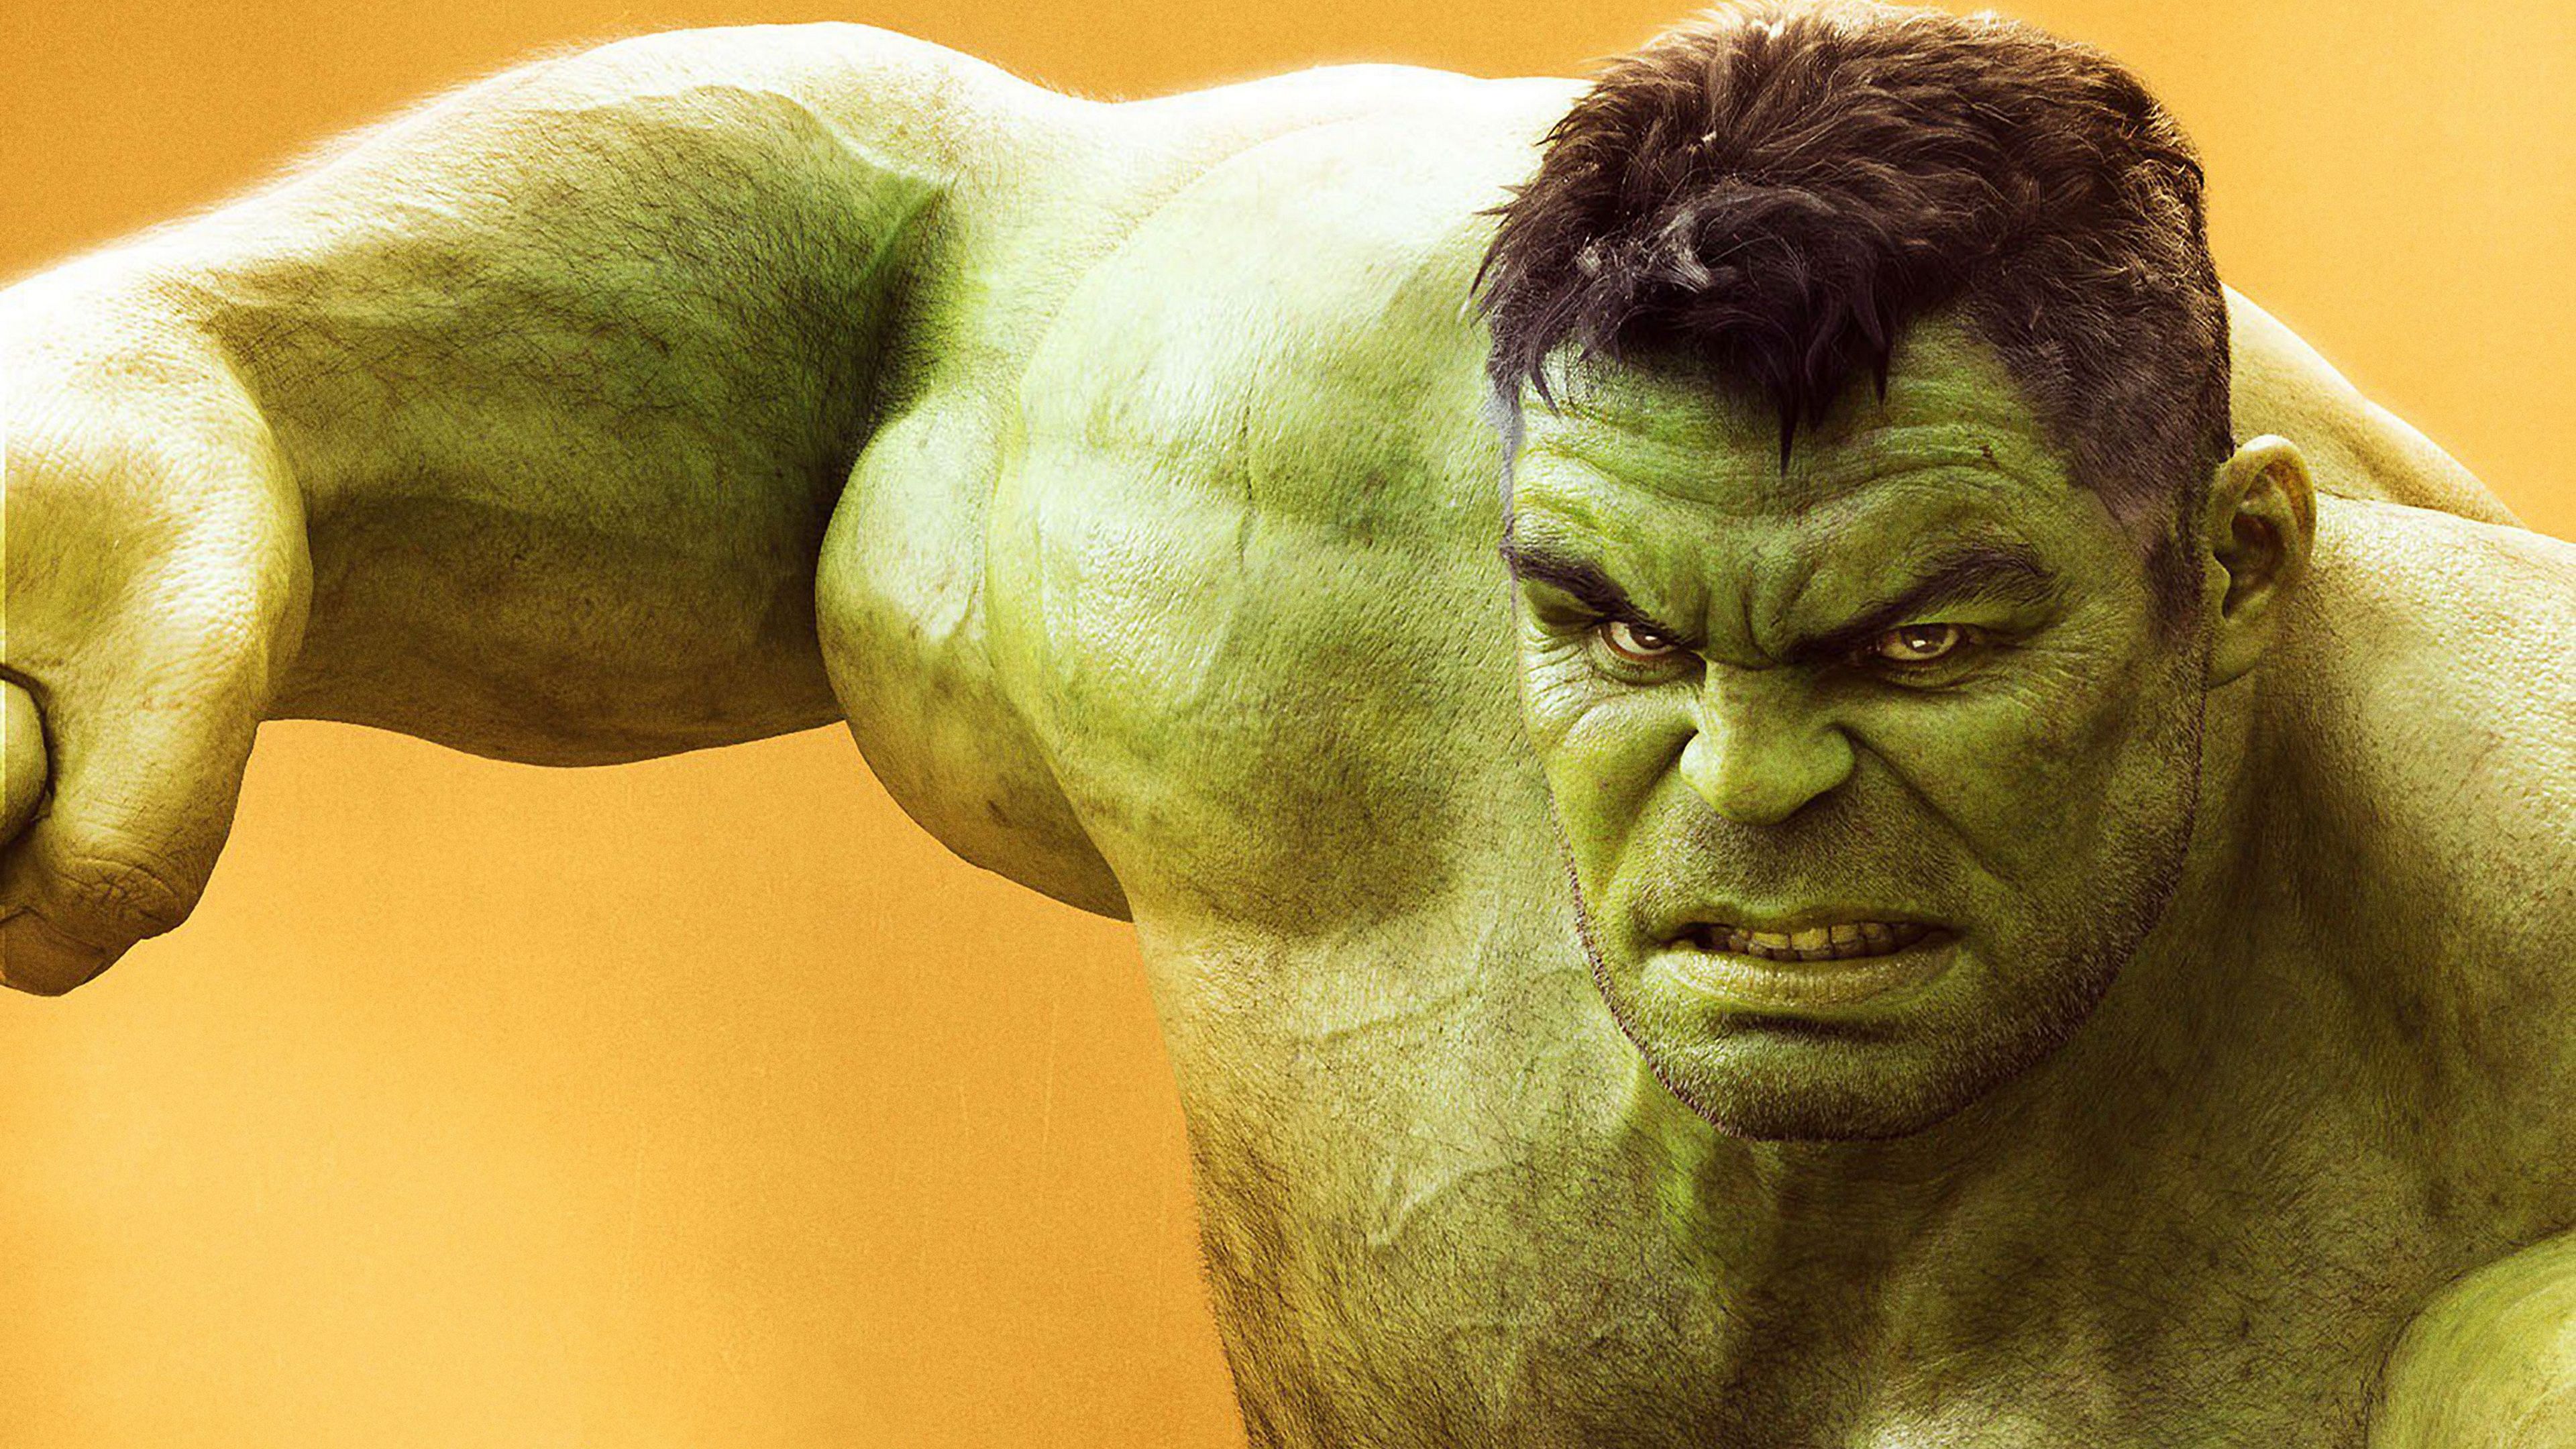 Hulk in Avengers Infinity War 4K 8K Wallpapers  HD Wallpapers  ID 23781